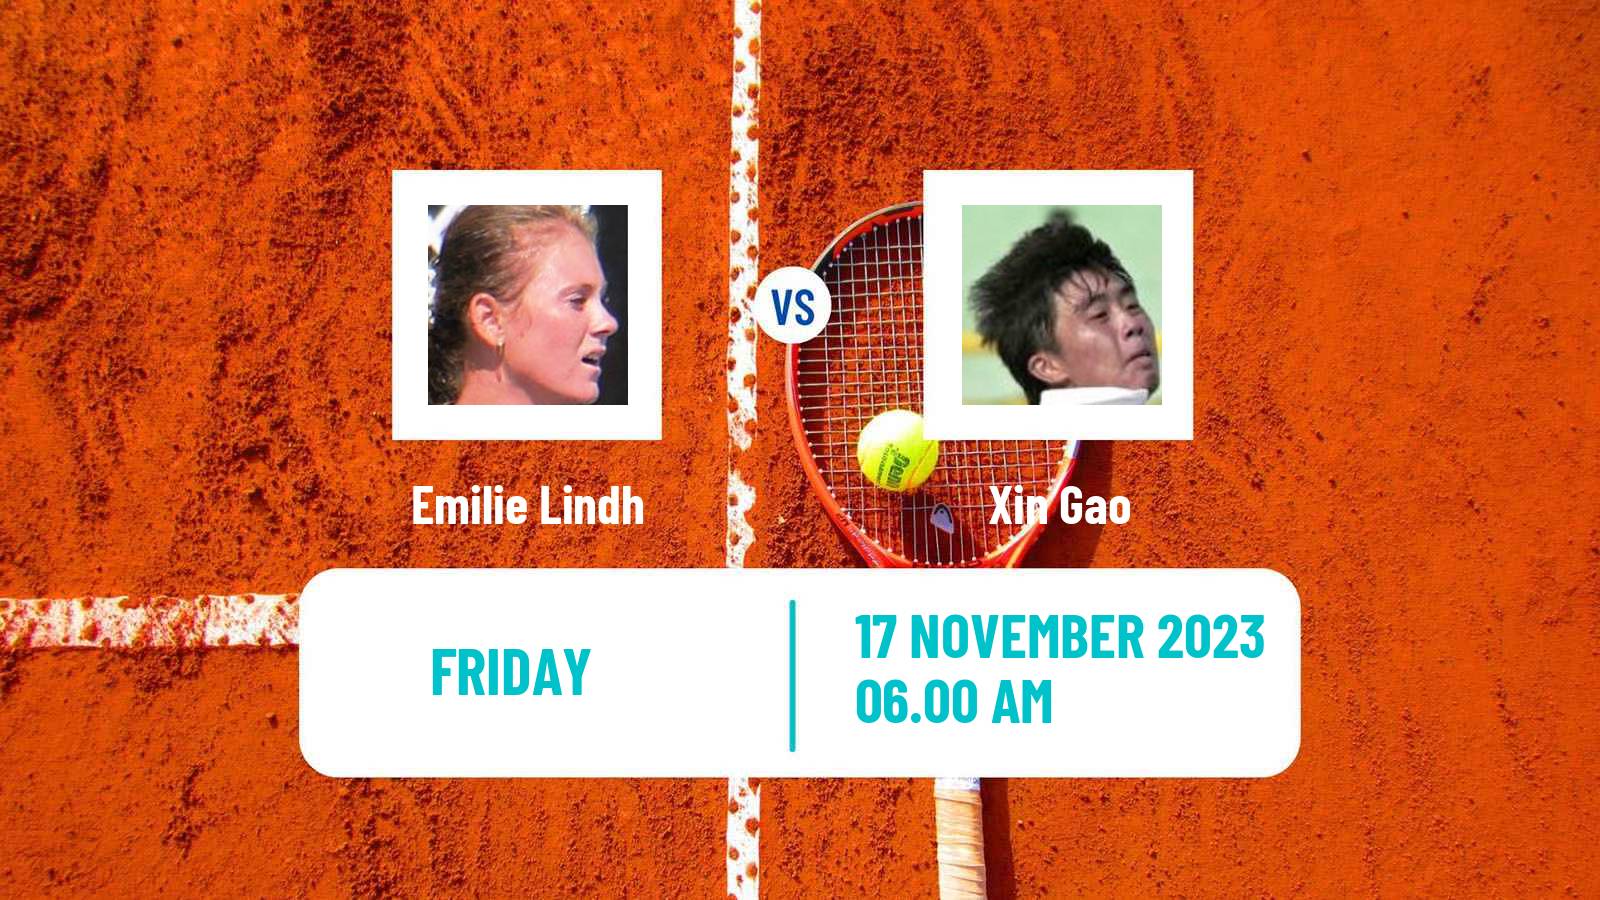 Tennis ITF W40 Funchal Women Emilie Lindh - Xin Gao